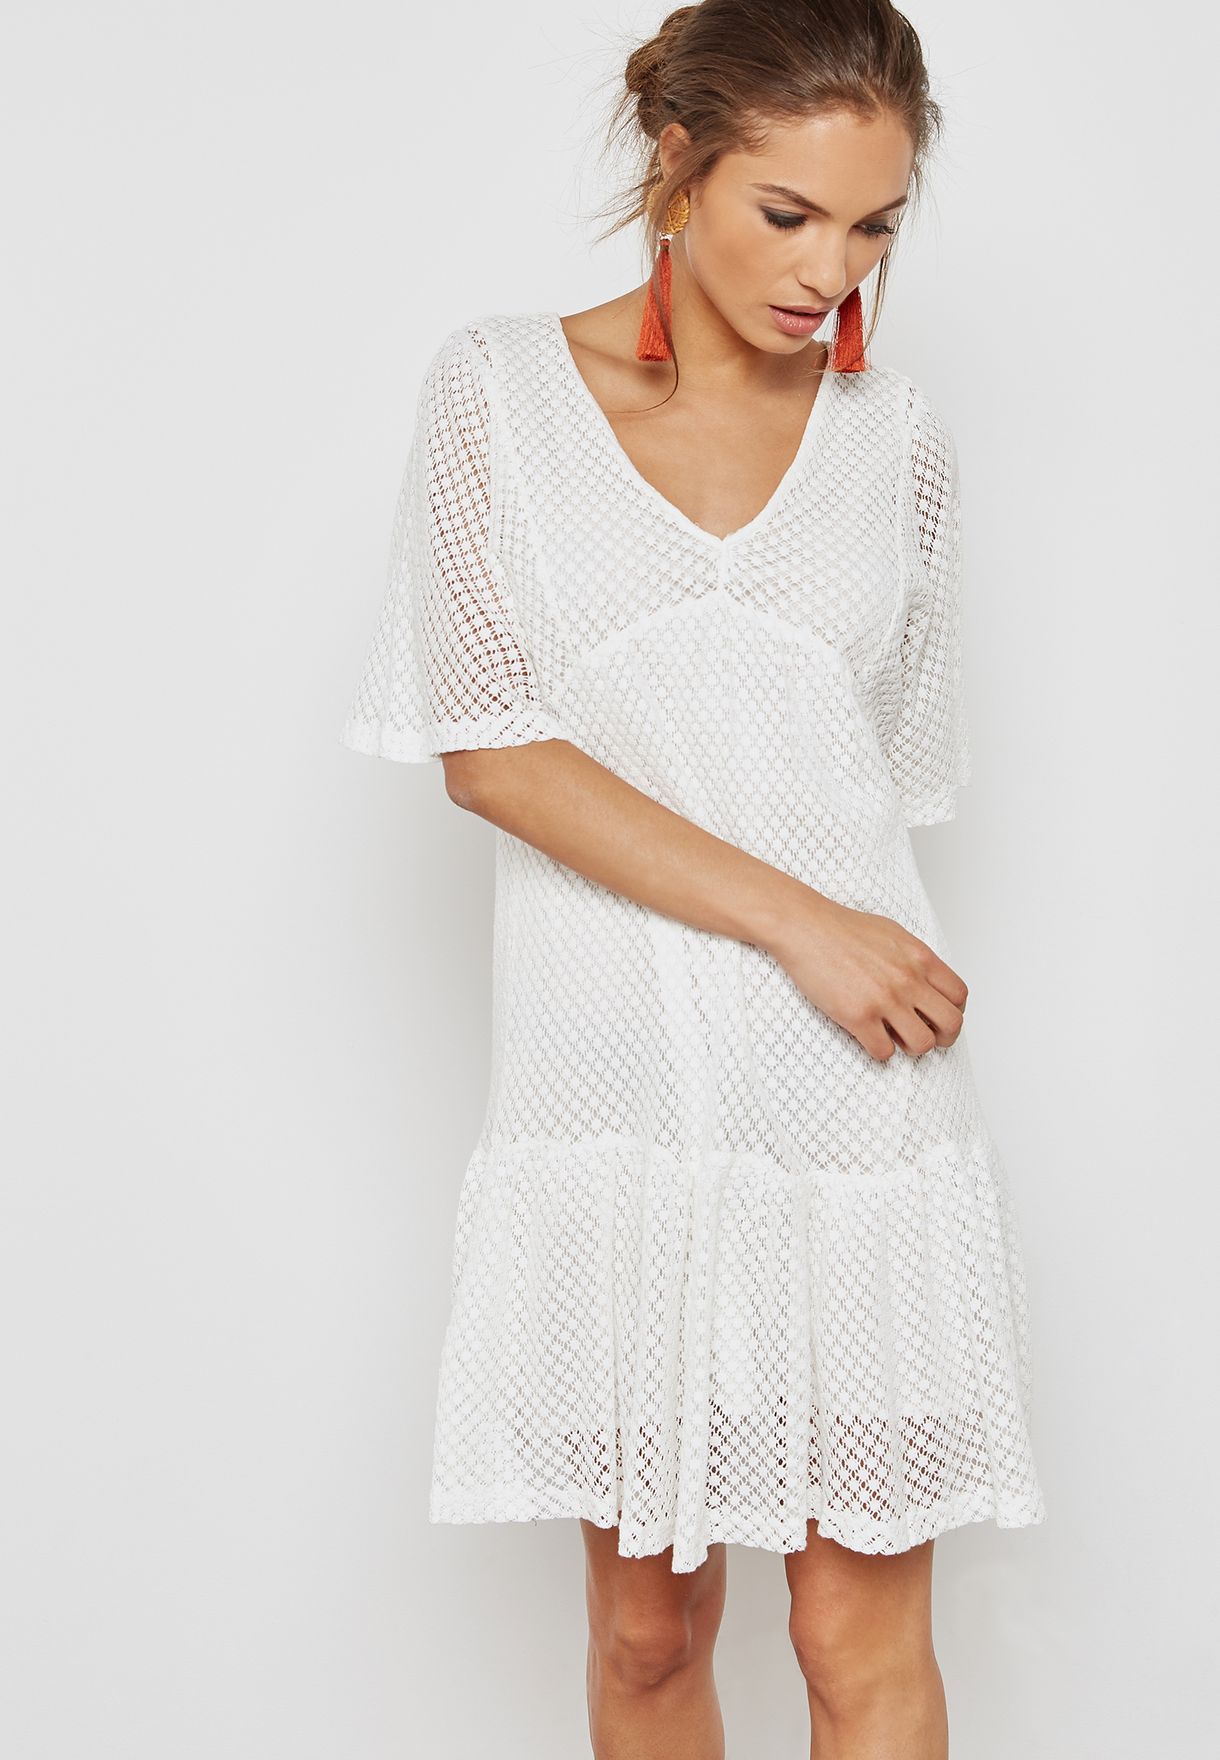 mango white lace dress